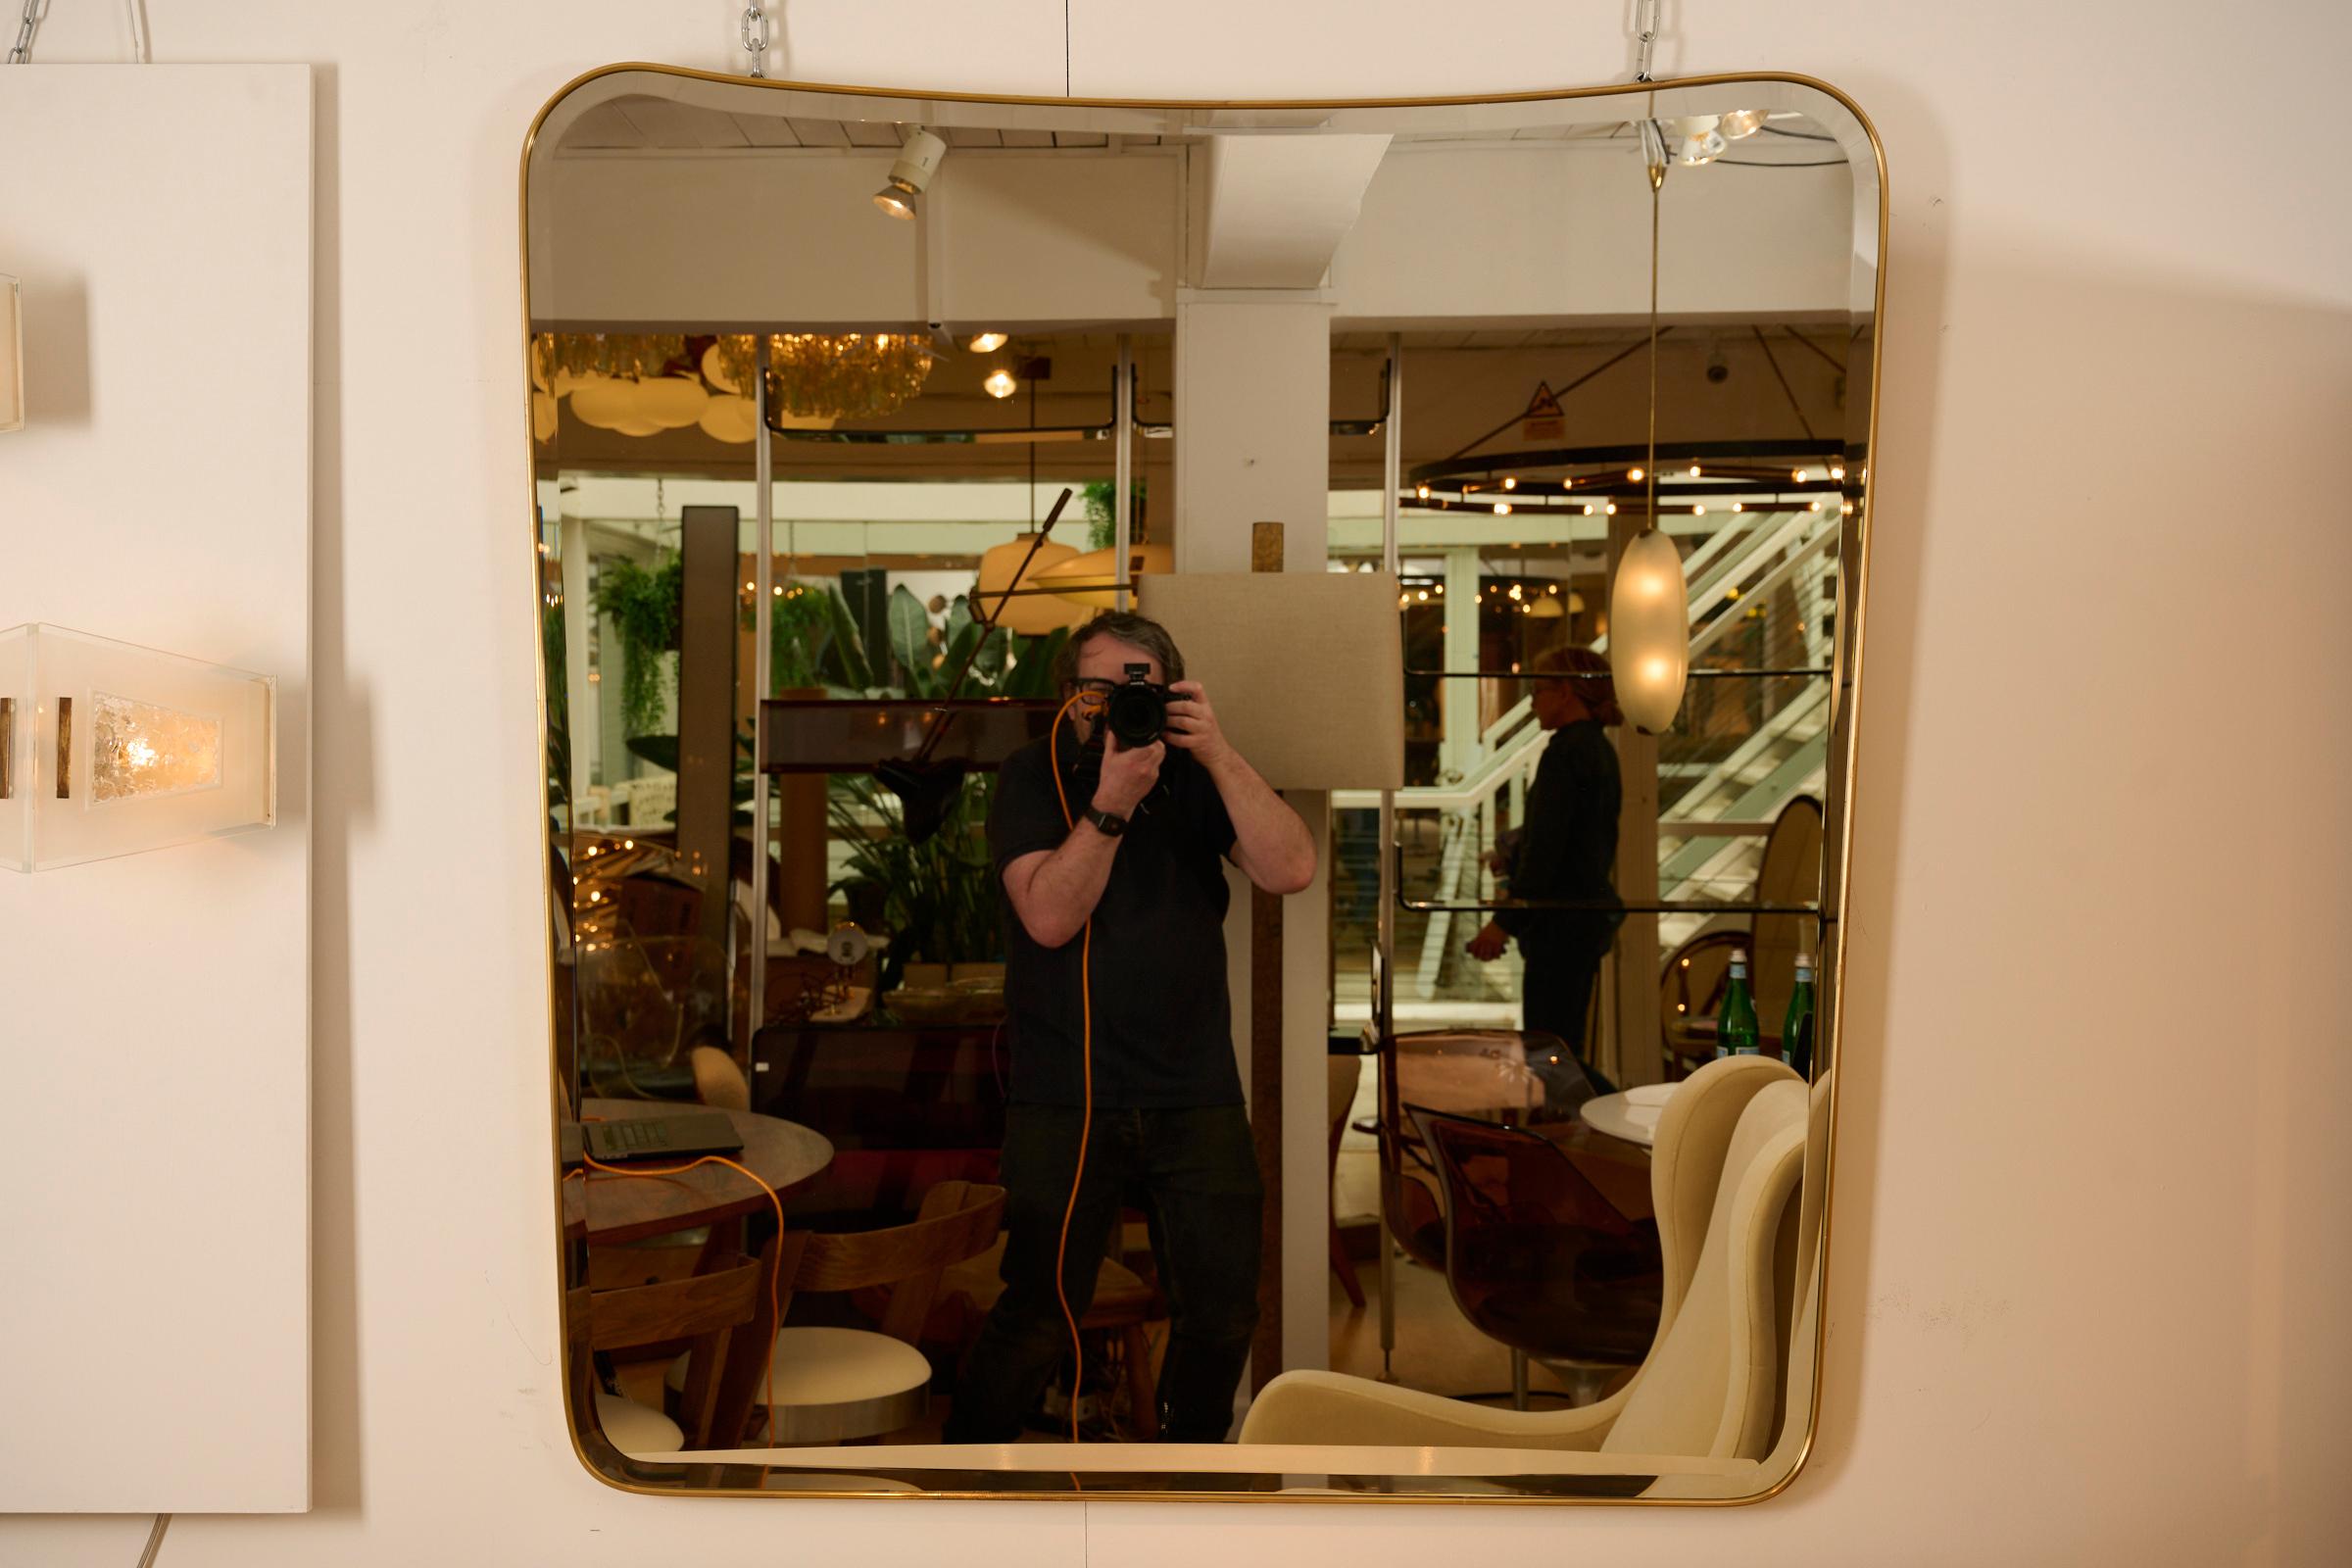 Großer Spiegel über dem Mantel mit Schräge. 

eine elegante, sich leicht verjüngende Form. 

120 cm Breite an der Oberseite des Spiegels.
110 cm Breite an der Basis des Spiegels.

Unlackiertes Messing verleiht ein antikes, gealtertes Aussehen.